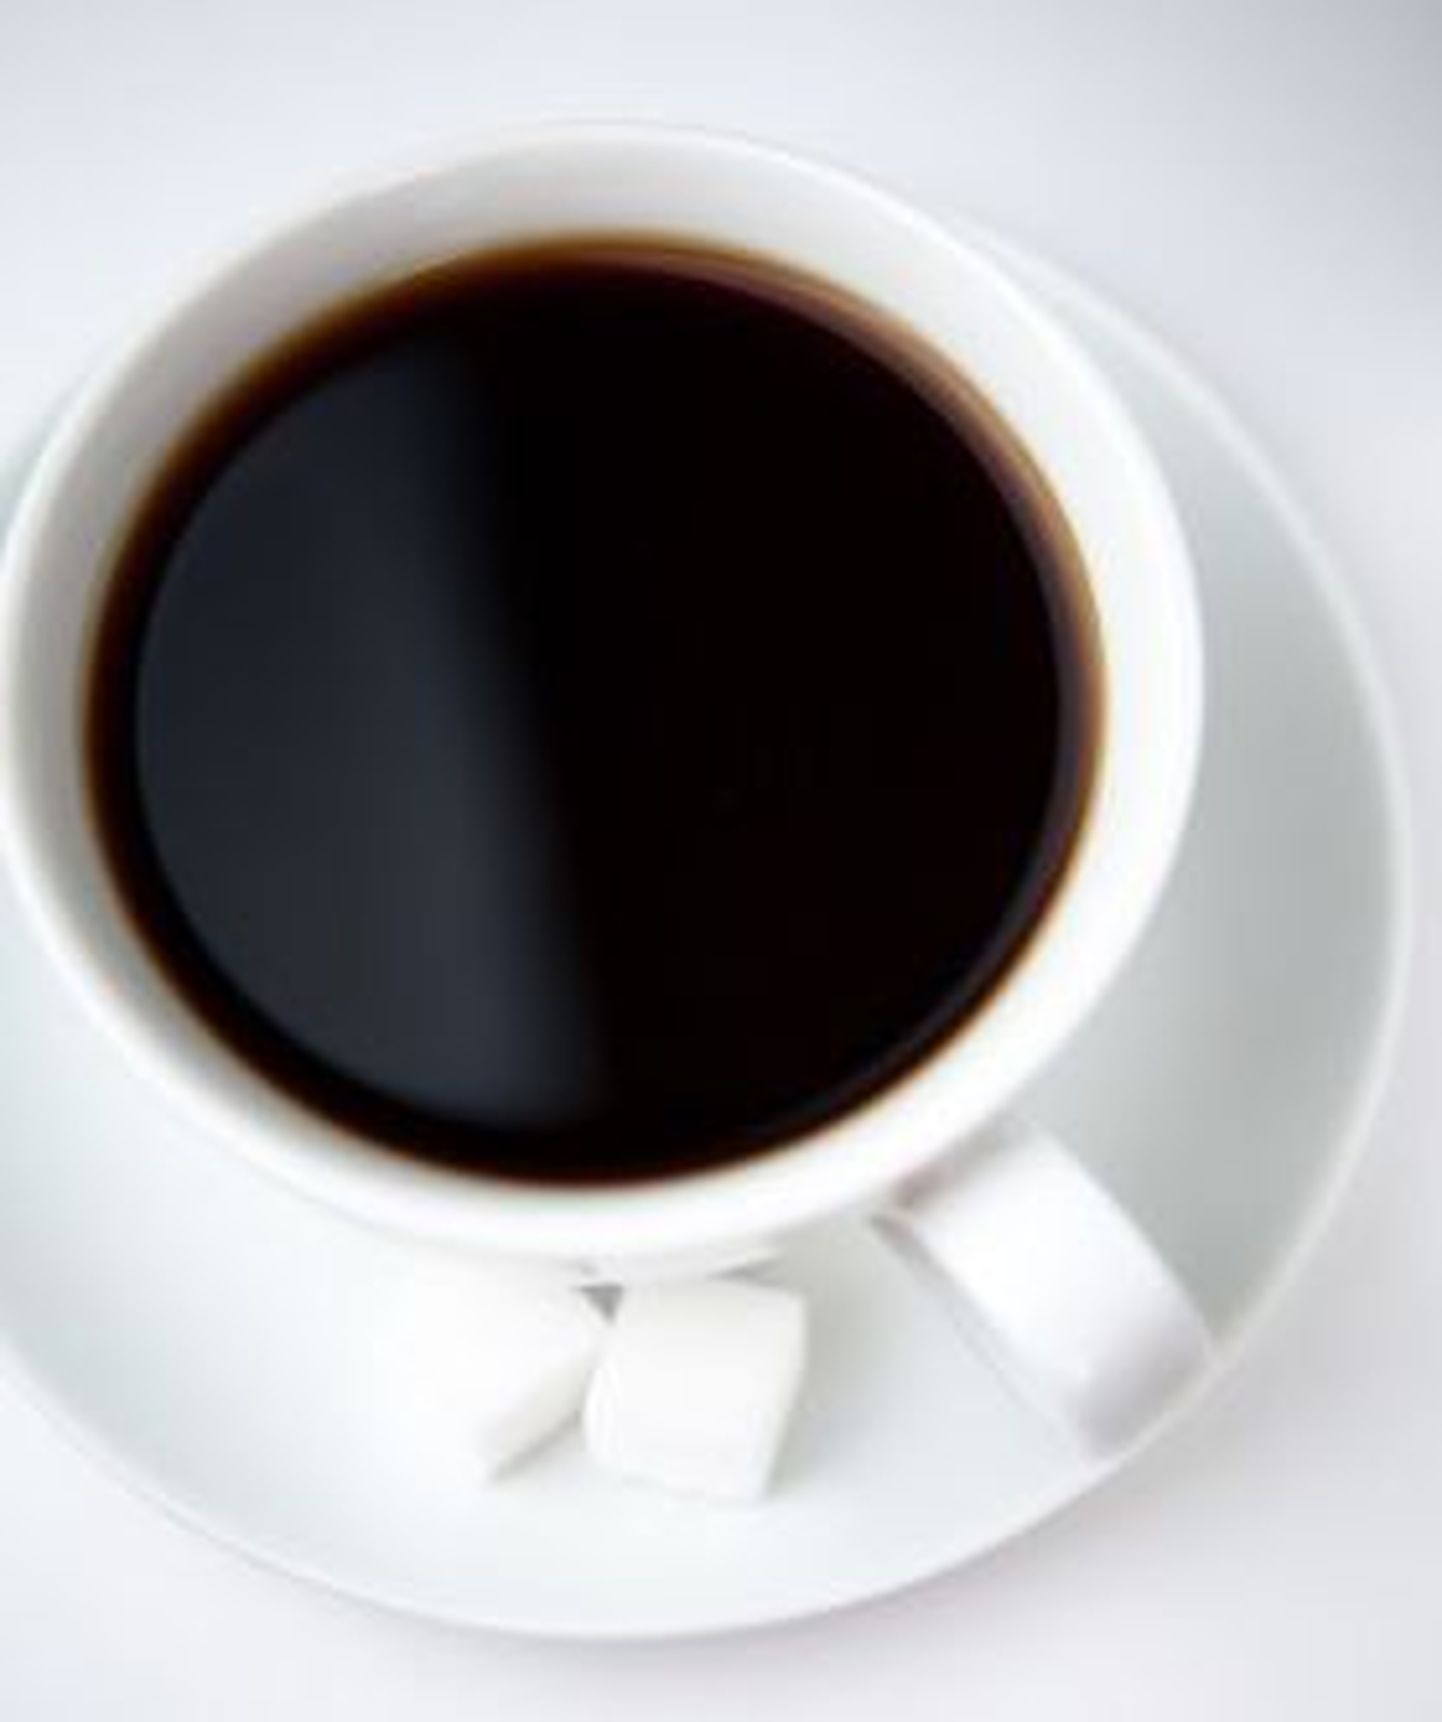 Teadlased uurisid, kuidas kohv üle tassi ääre ei loksuks